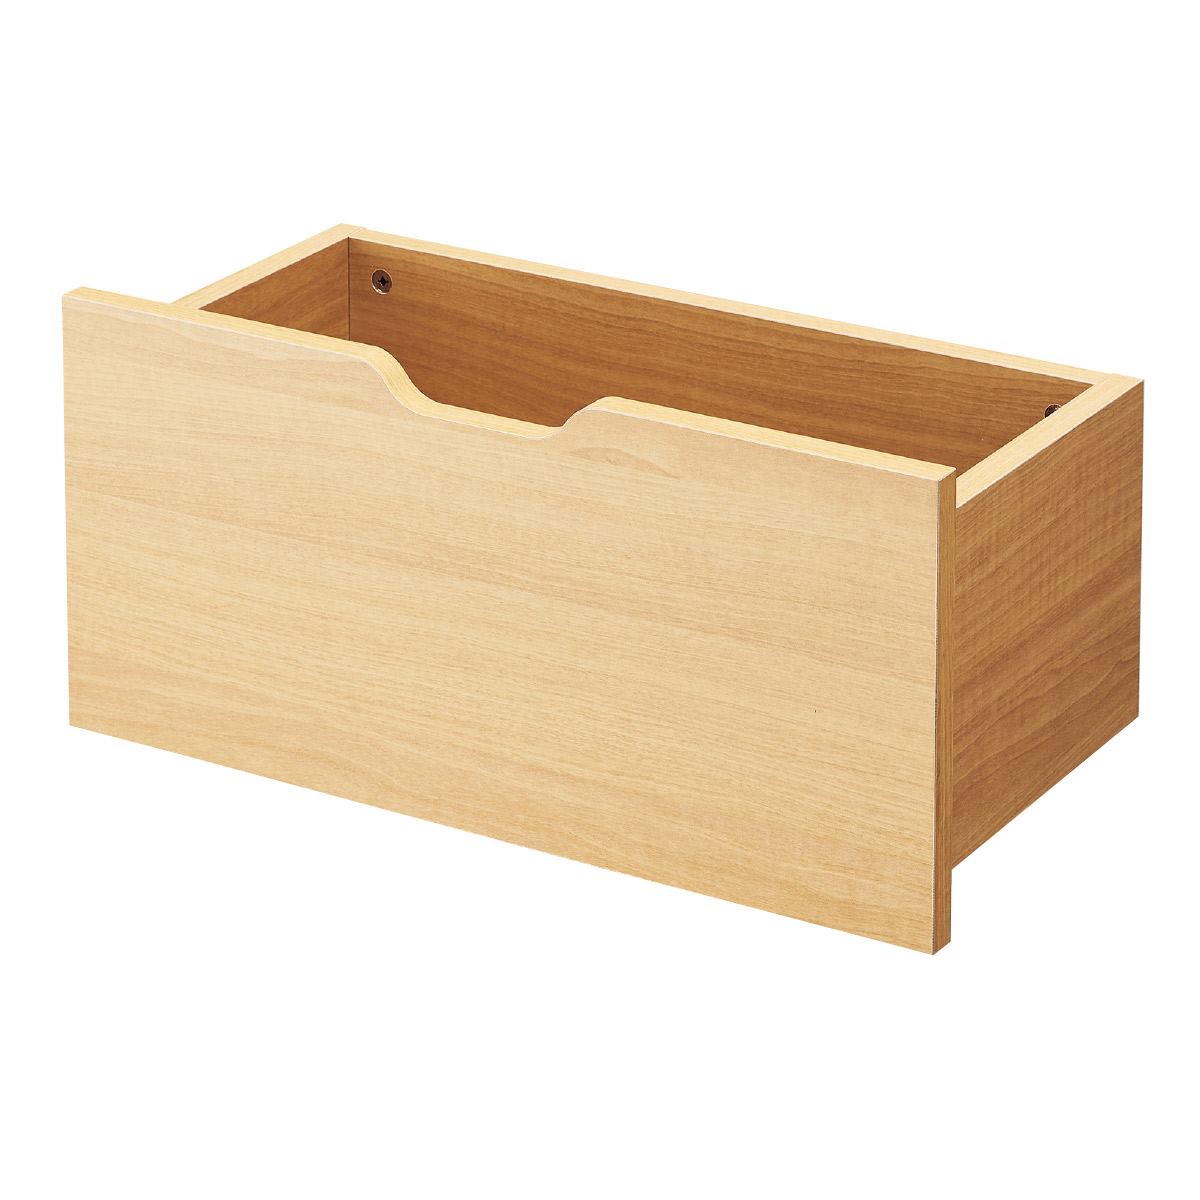 トロッコボックス 木箱